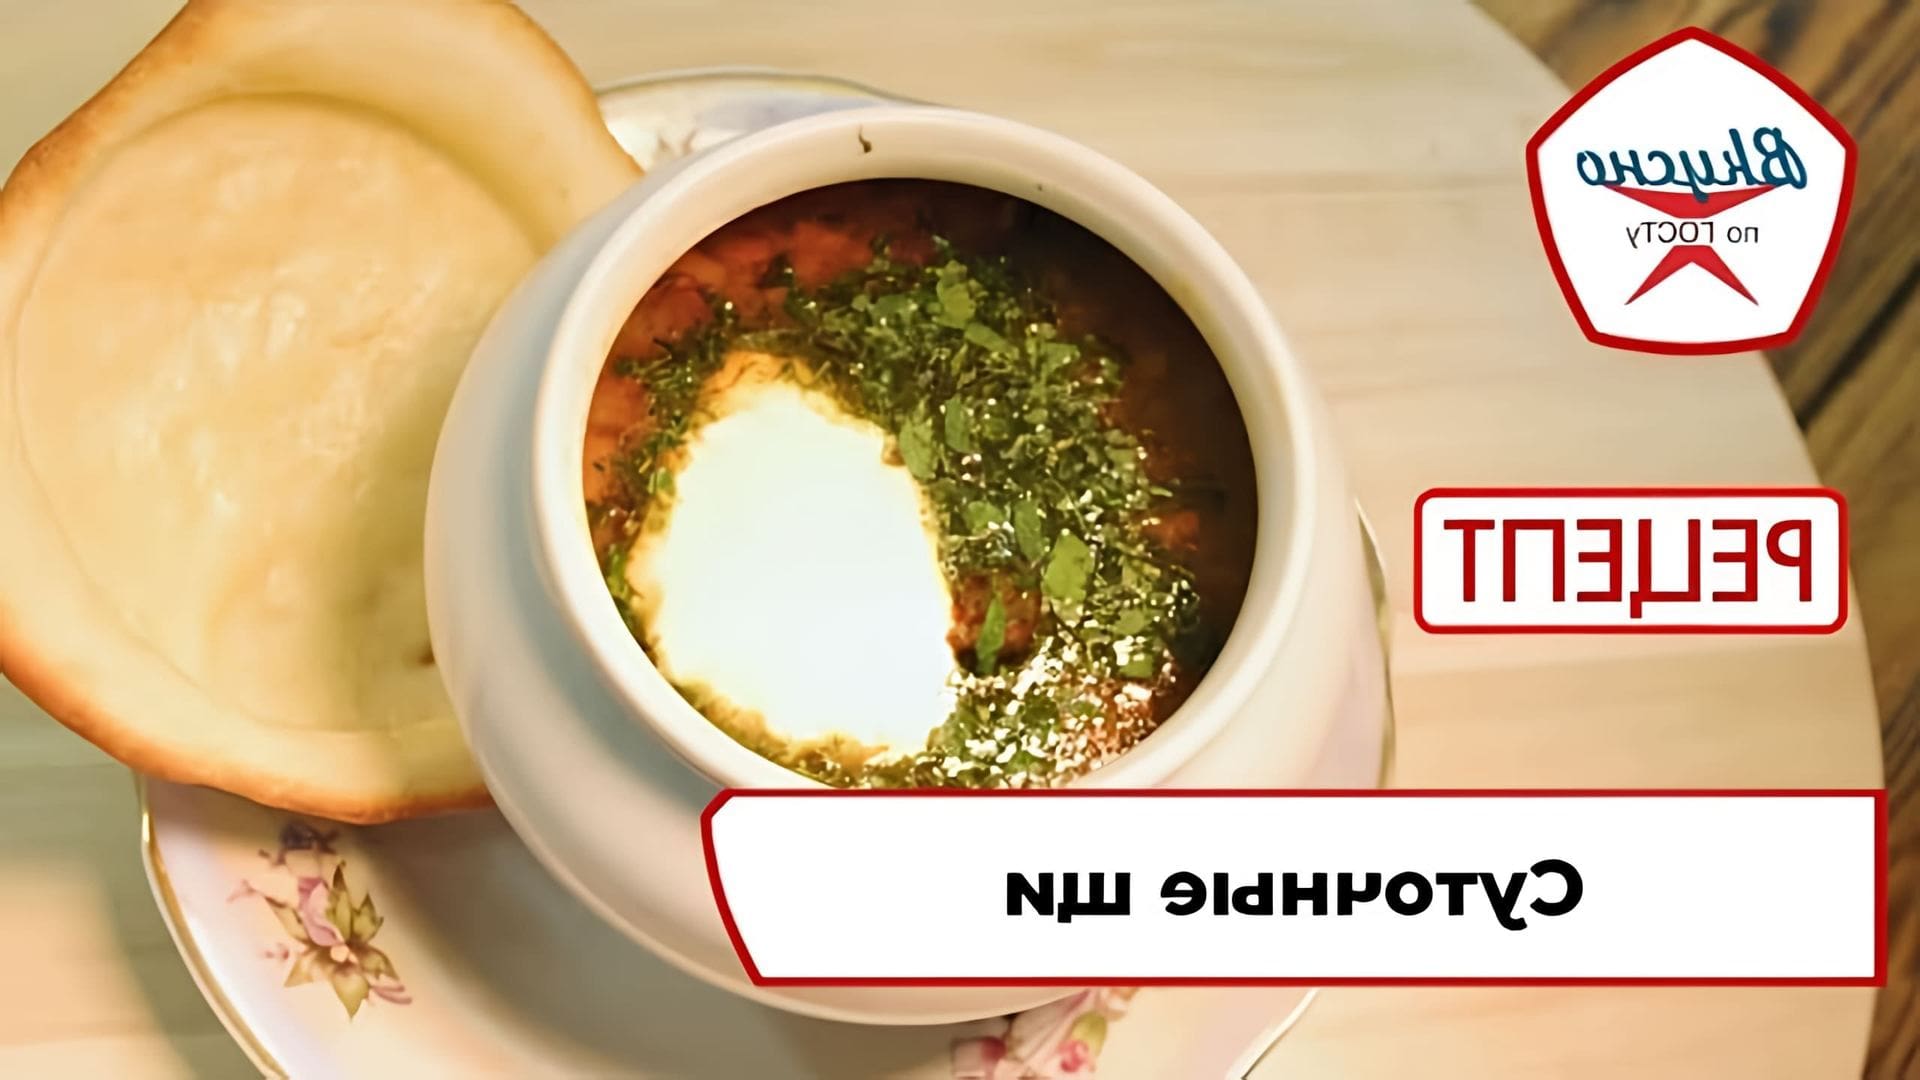 В этом видео демонстрируется рецепт суточных щей, также известных как сталинские щи